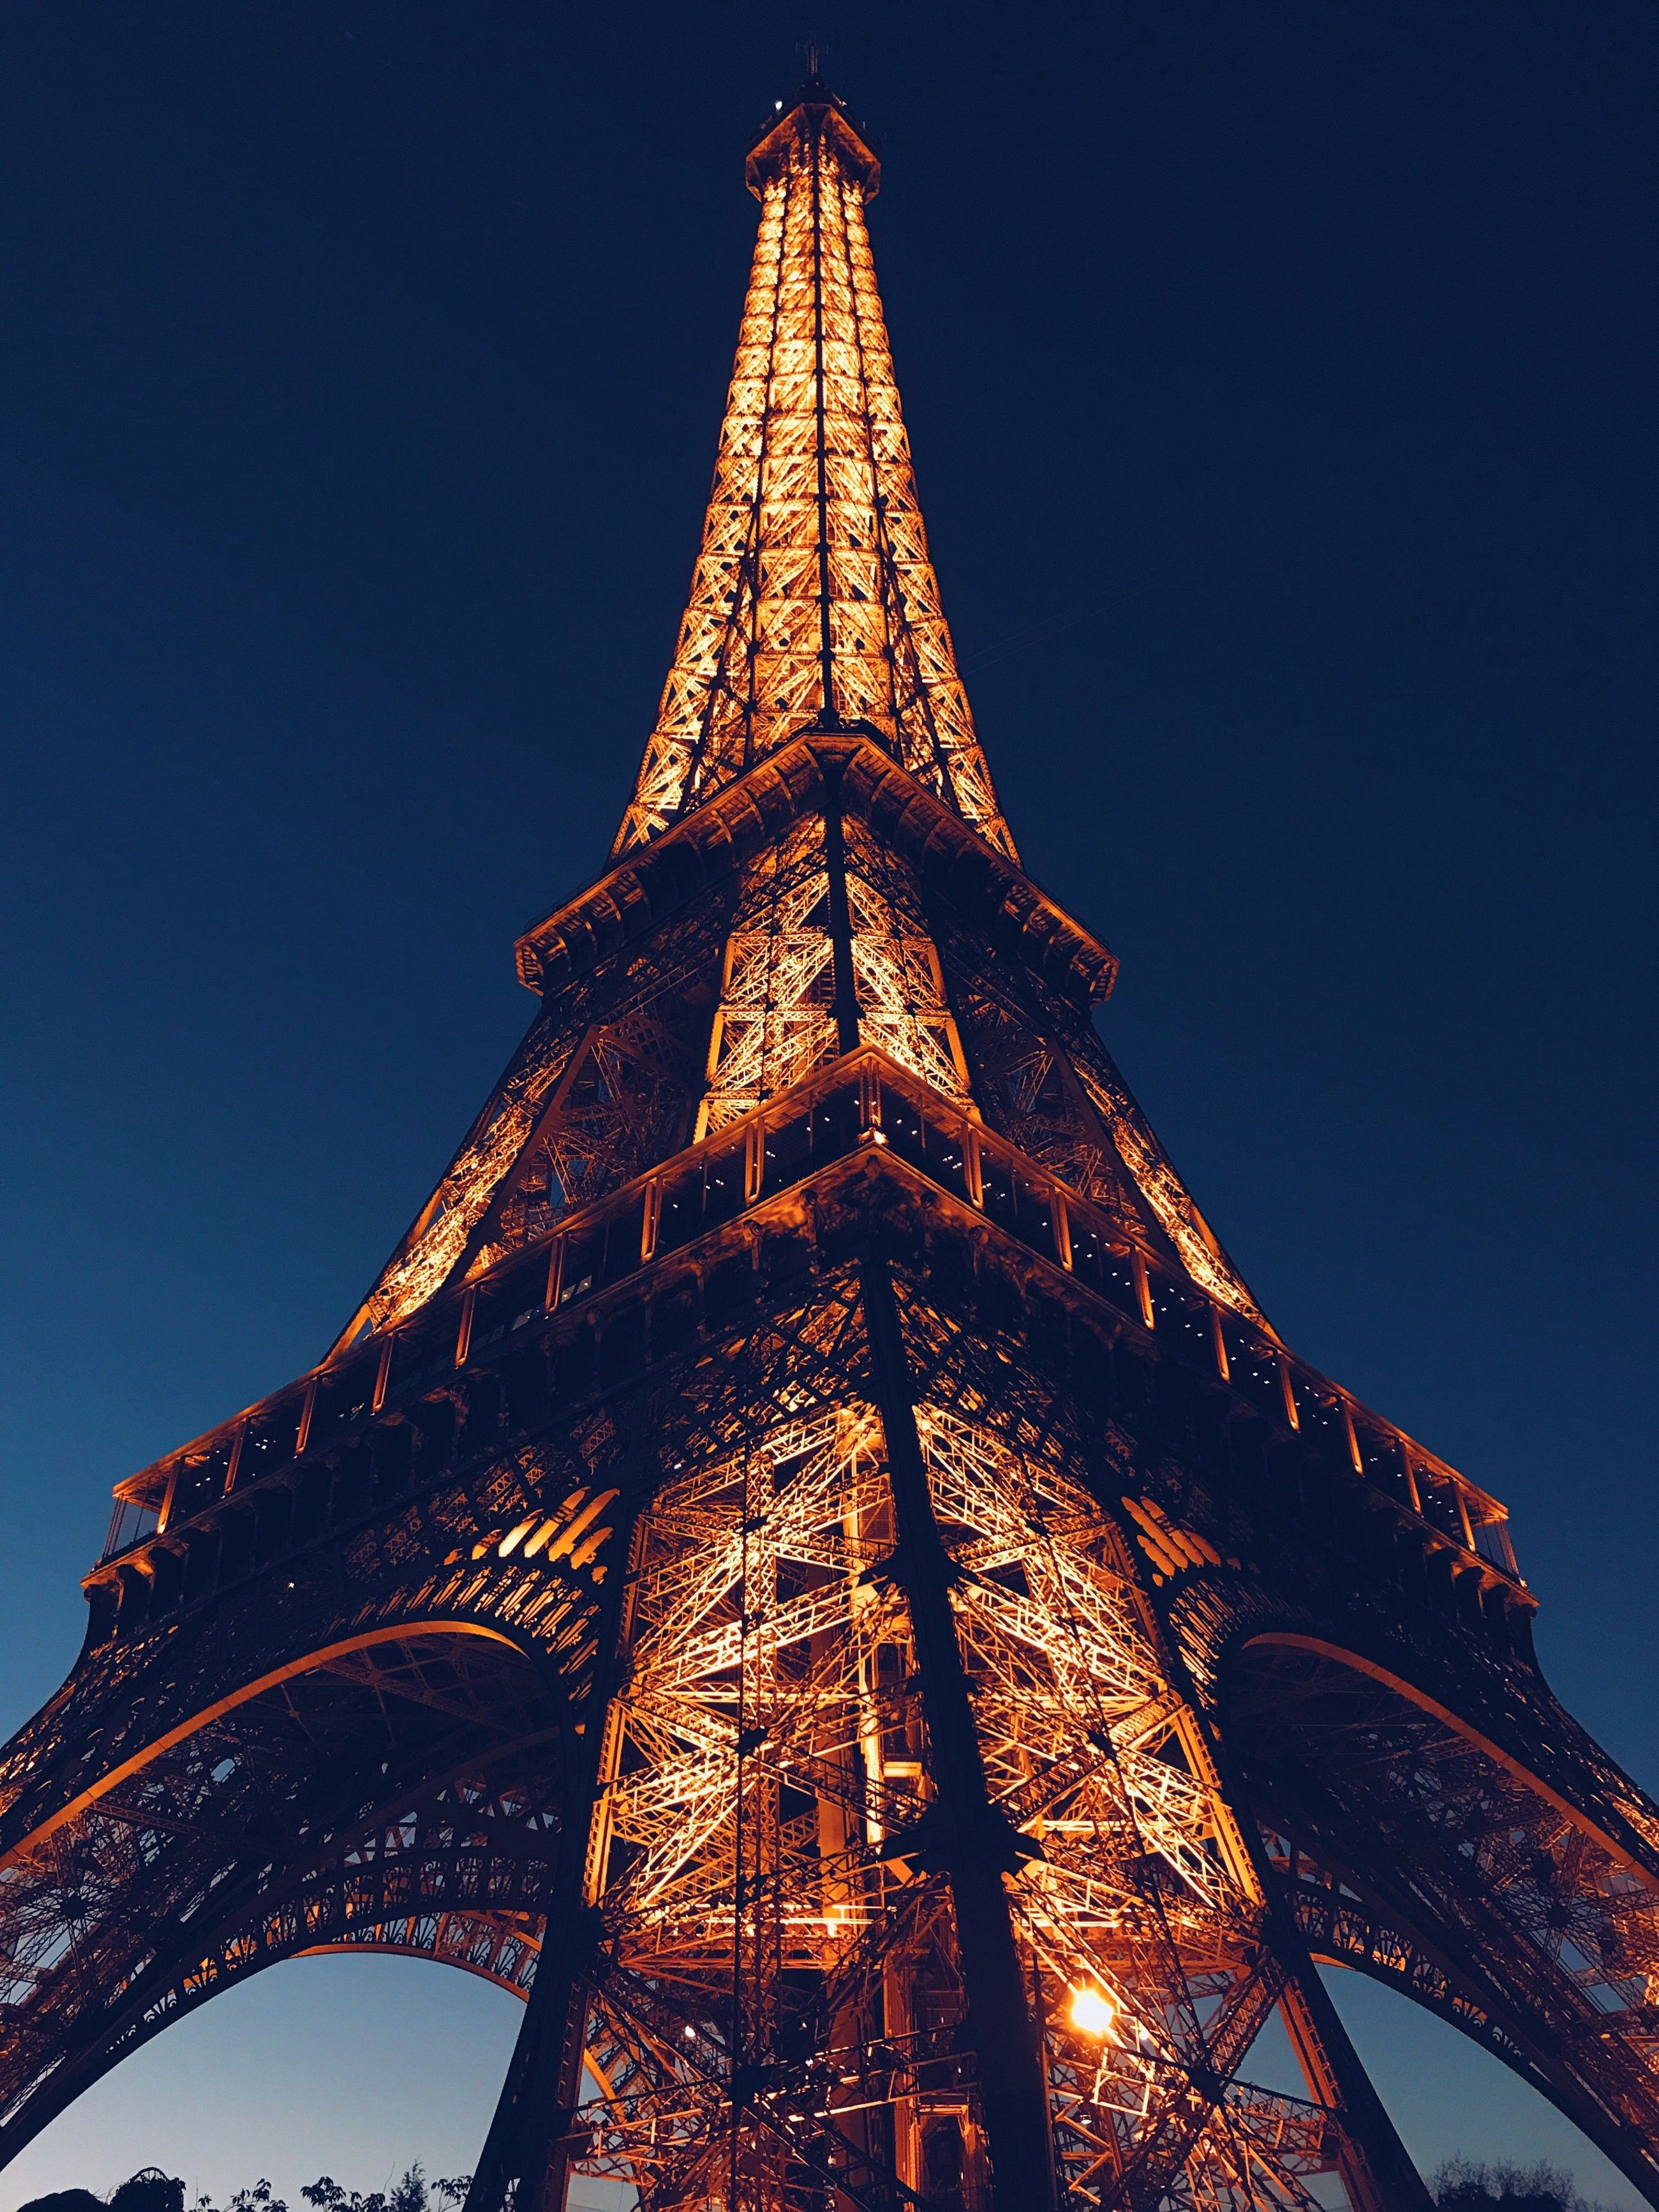 Du khách sẽ bị phạt nếu chụp hình tháp Eiffel vào buổi tối HỘI KỶ LỤC GIA VIỆT NAM TỔ CHỨC KỶ LỤC VIỆT NAMVIETKINGS